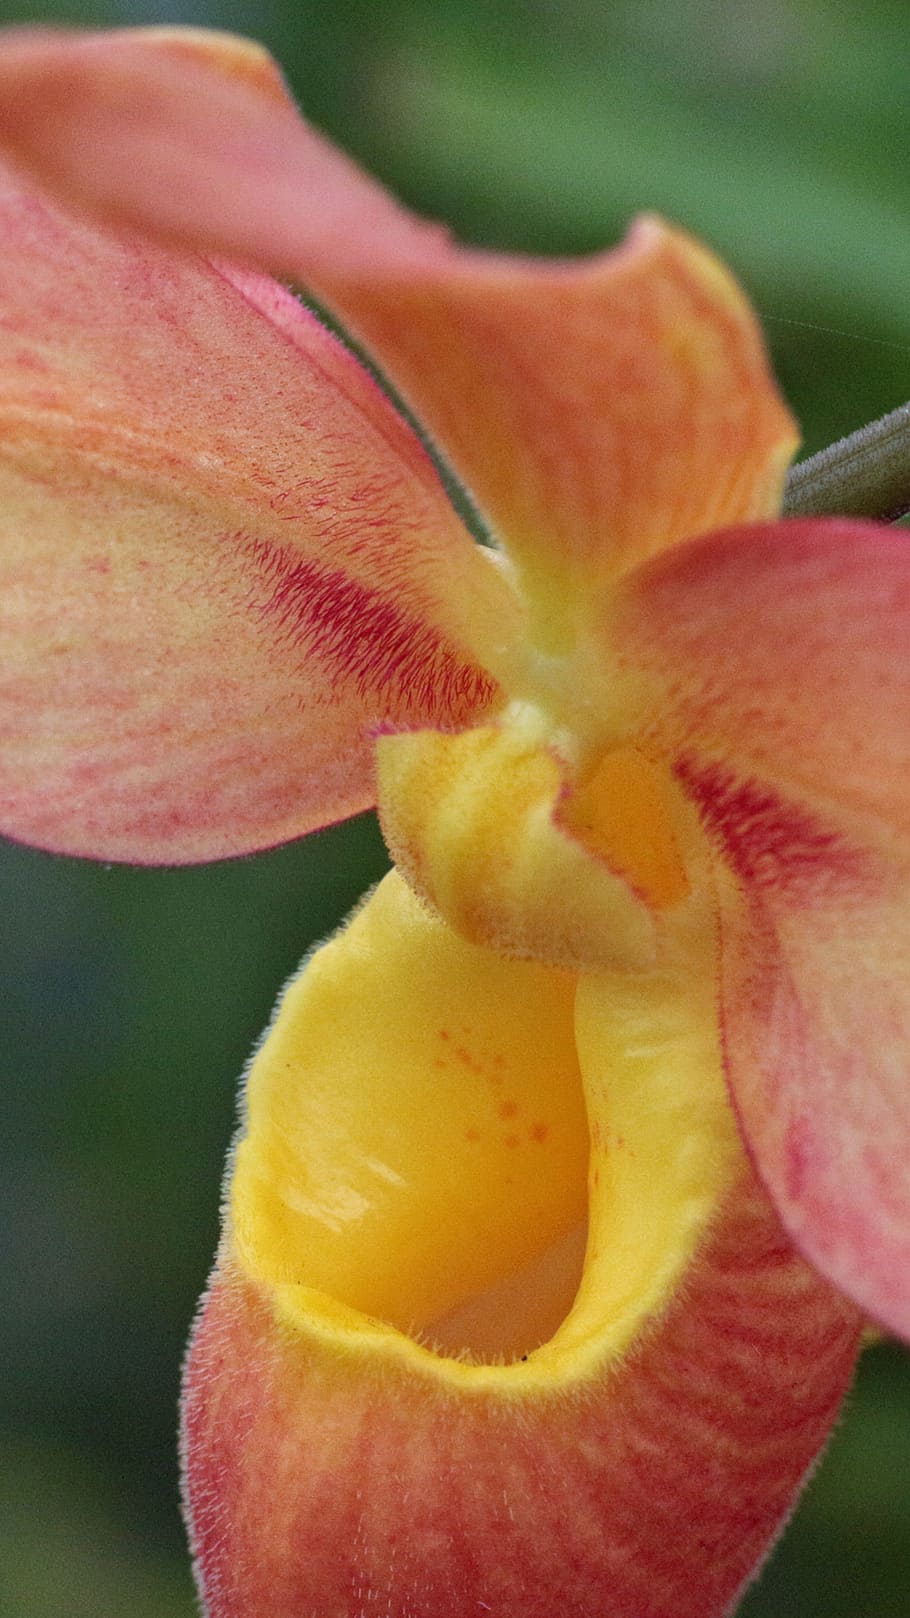 laranja, amarelo, orquídea phragmipedium, closeup, tiro da imagem, tiro., chinelo de senhora, cypripedioideae, phragmipaphium, labelo